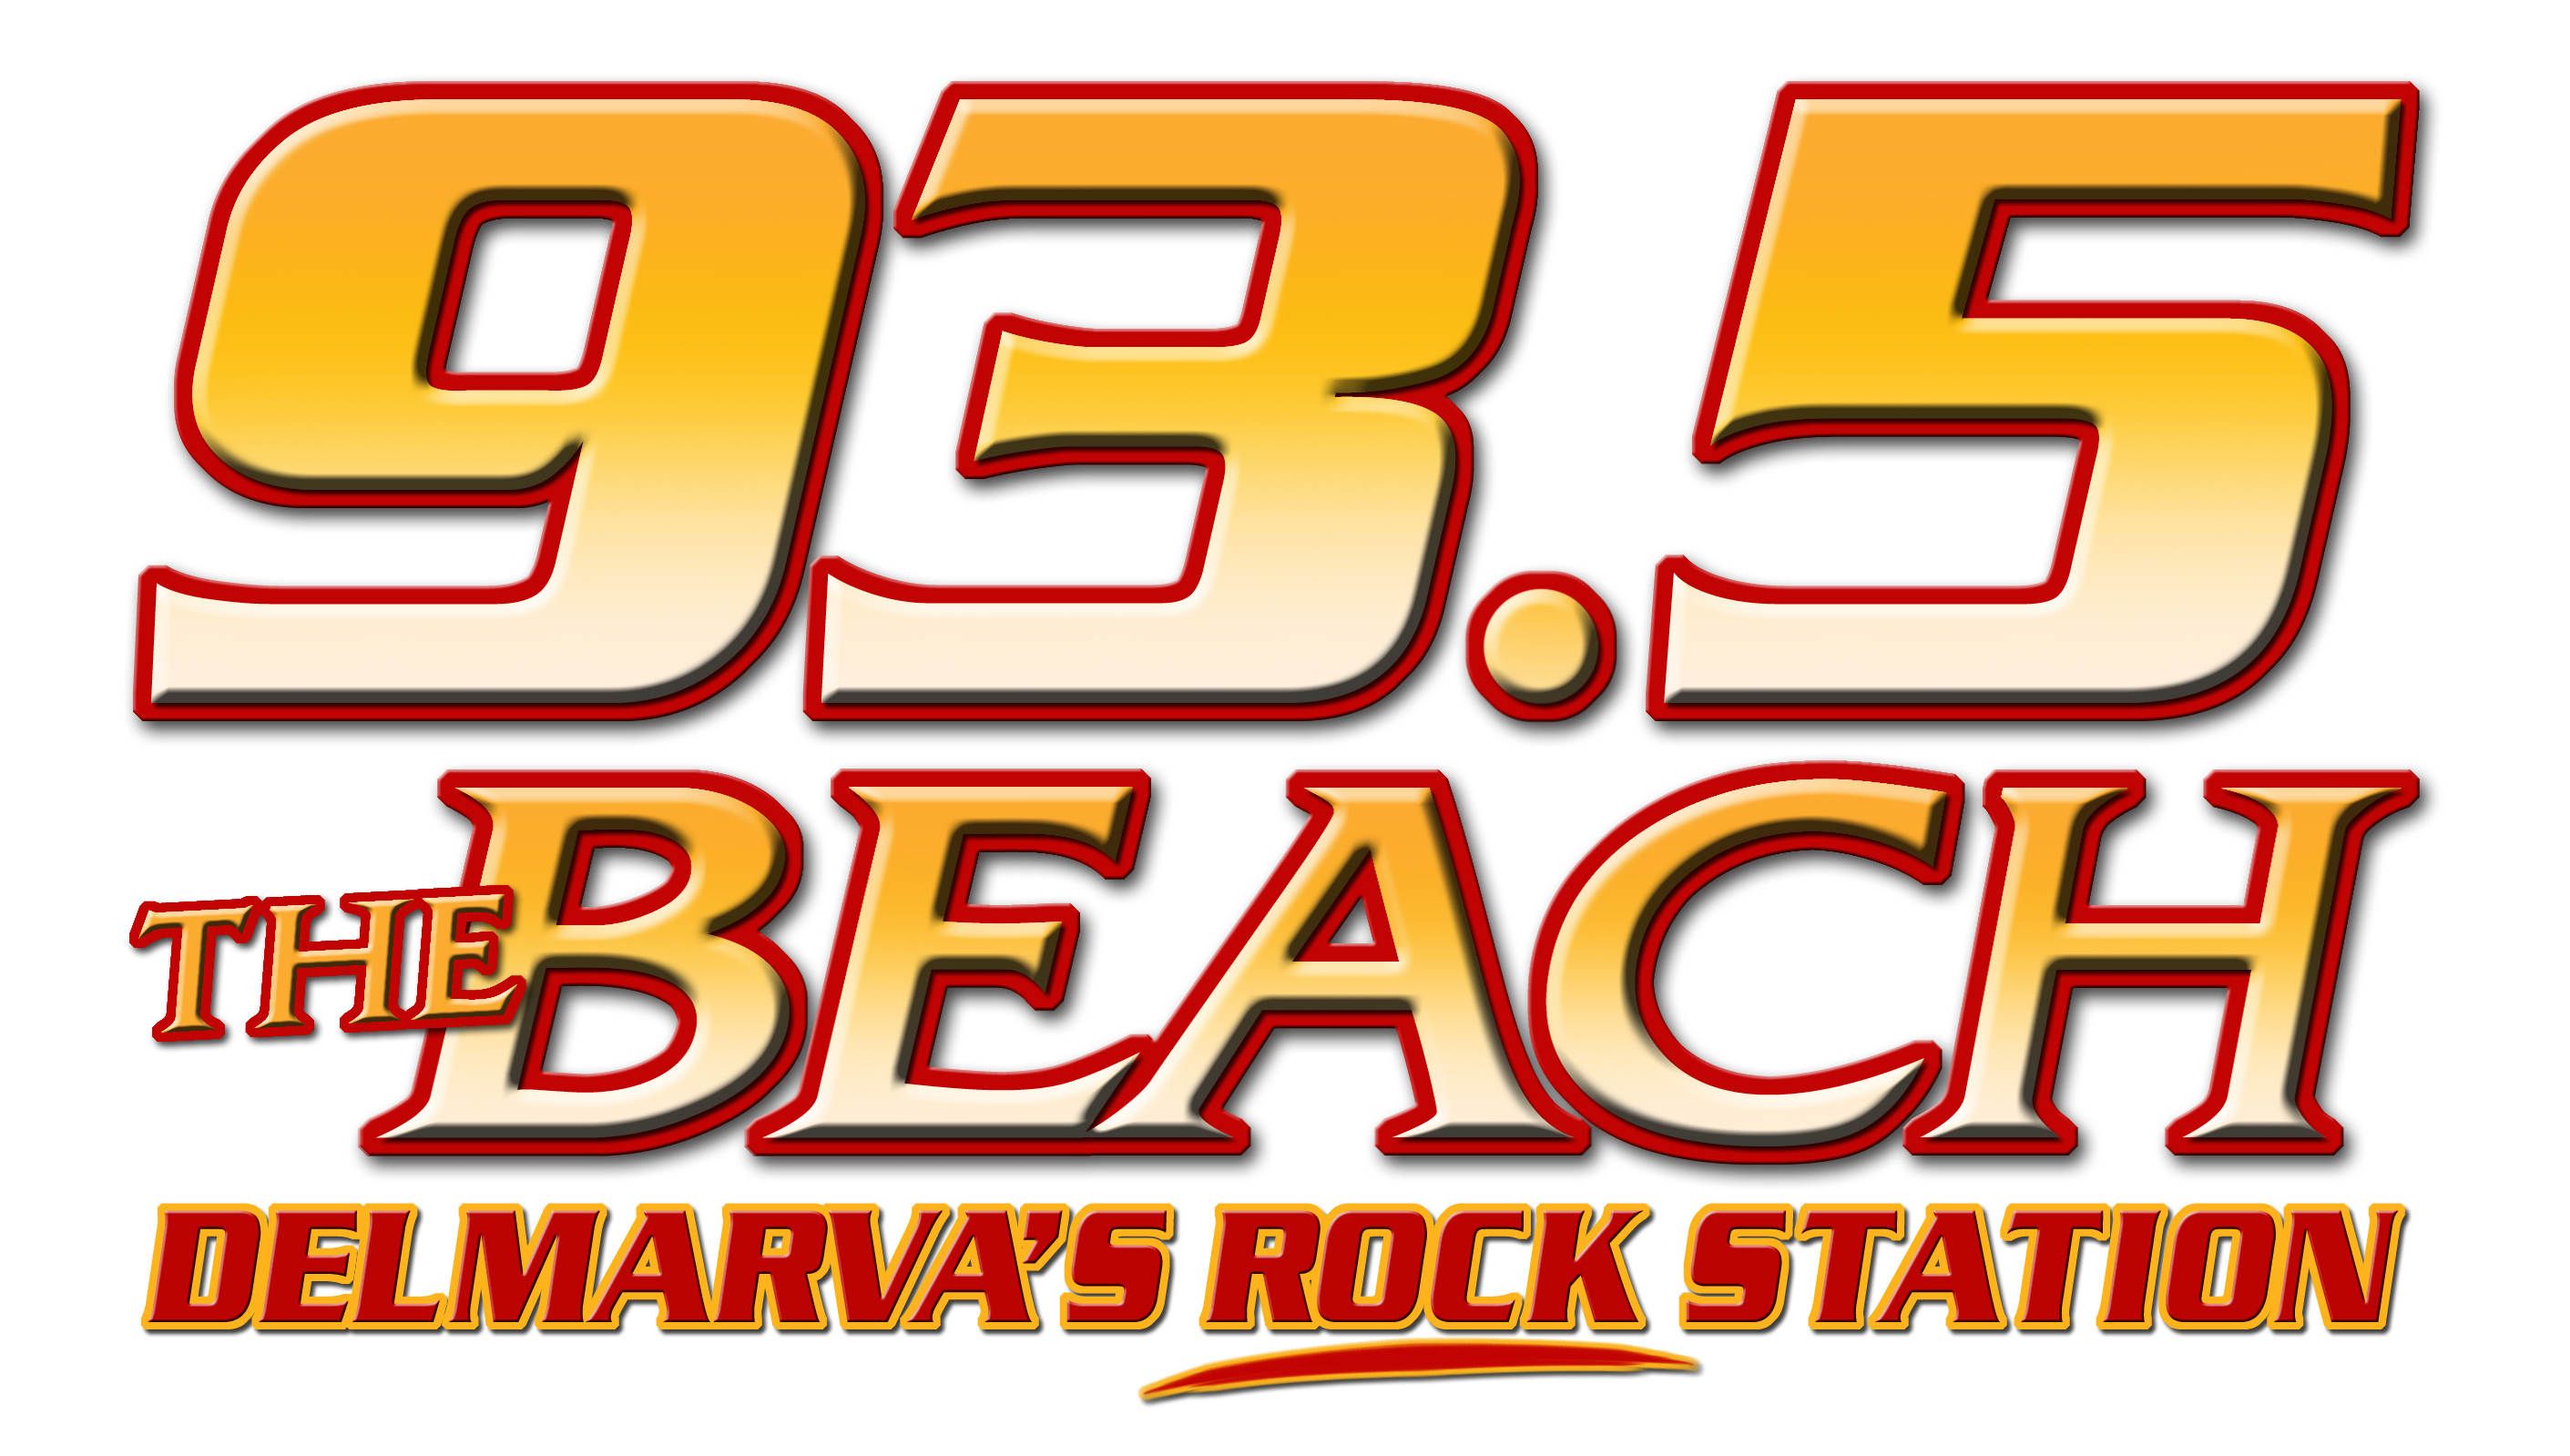 93.5 the beach logo